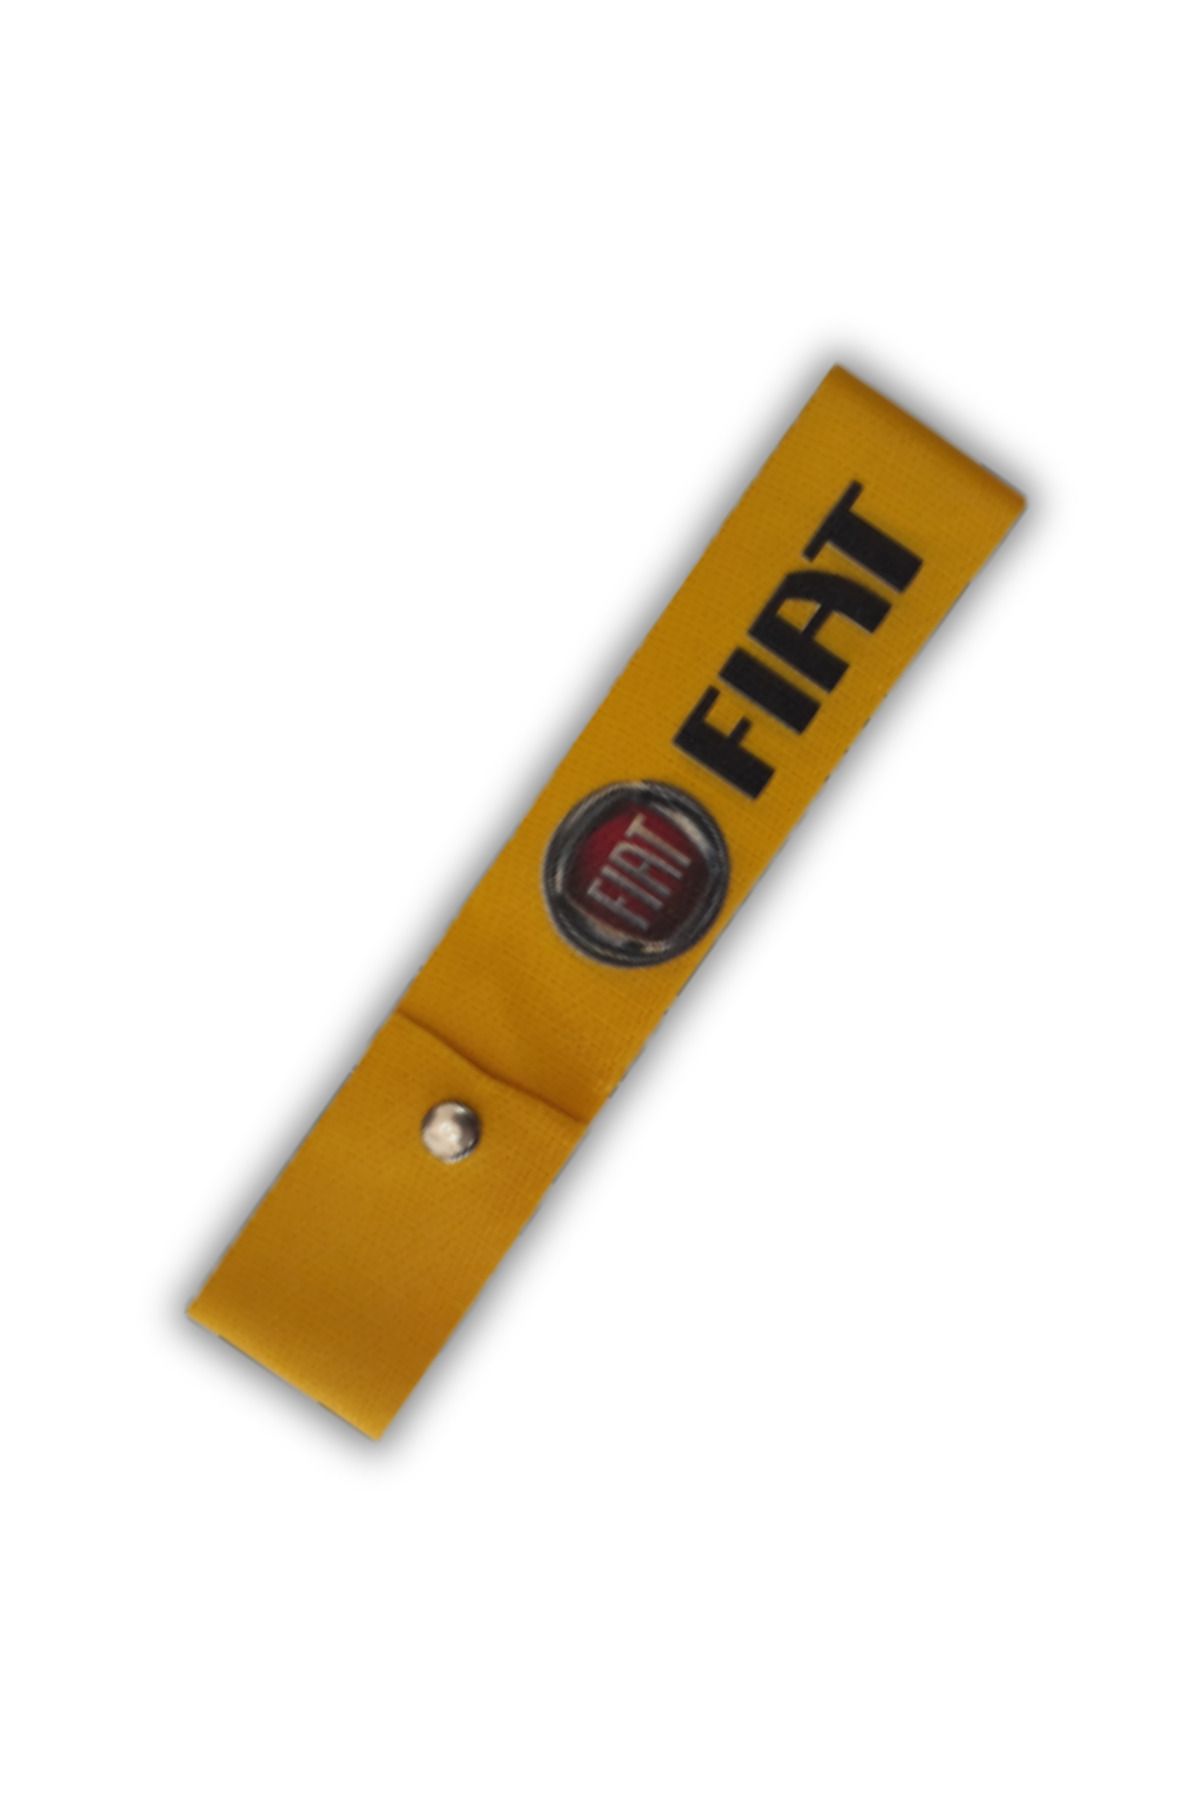 TUSBA MARKET Fiat Çıt Çıtlı Tampon Dili Çeki Ipi / Fiat Tampon Sticker Arma